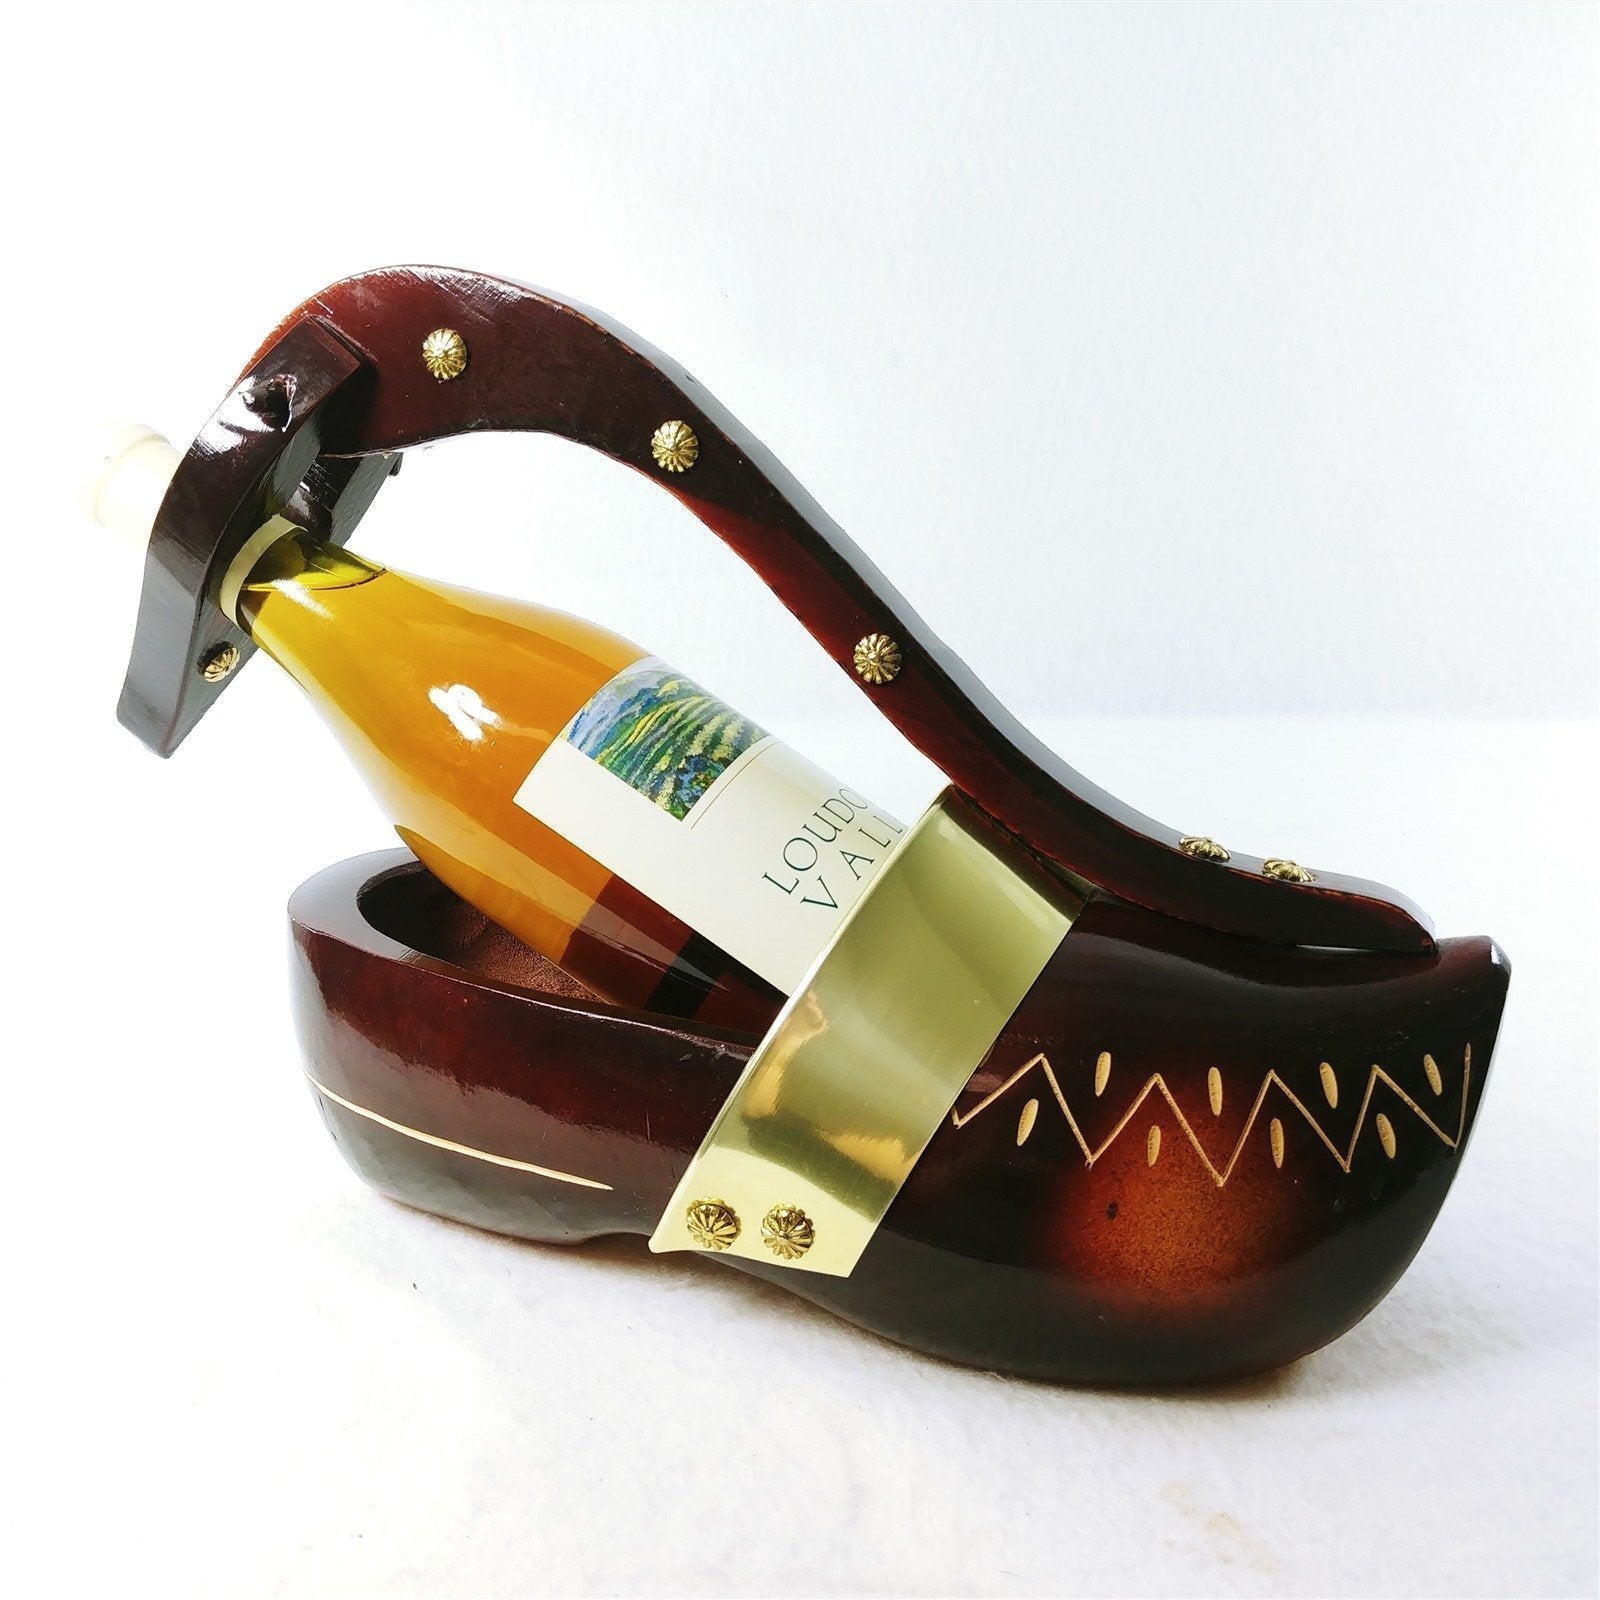 Wine Bottle Holder Hand Carved Wooden Shoe Rivet Accents